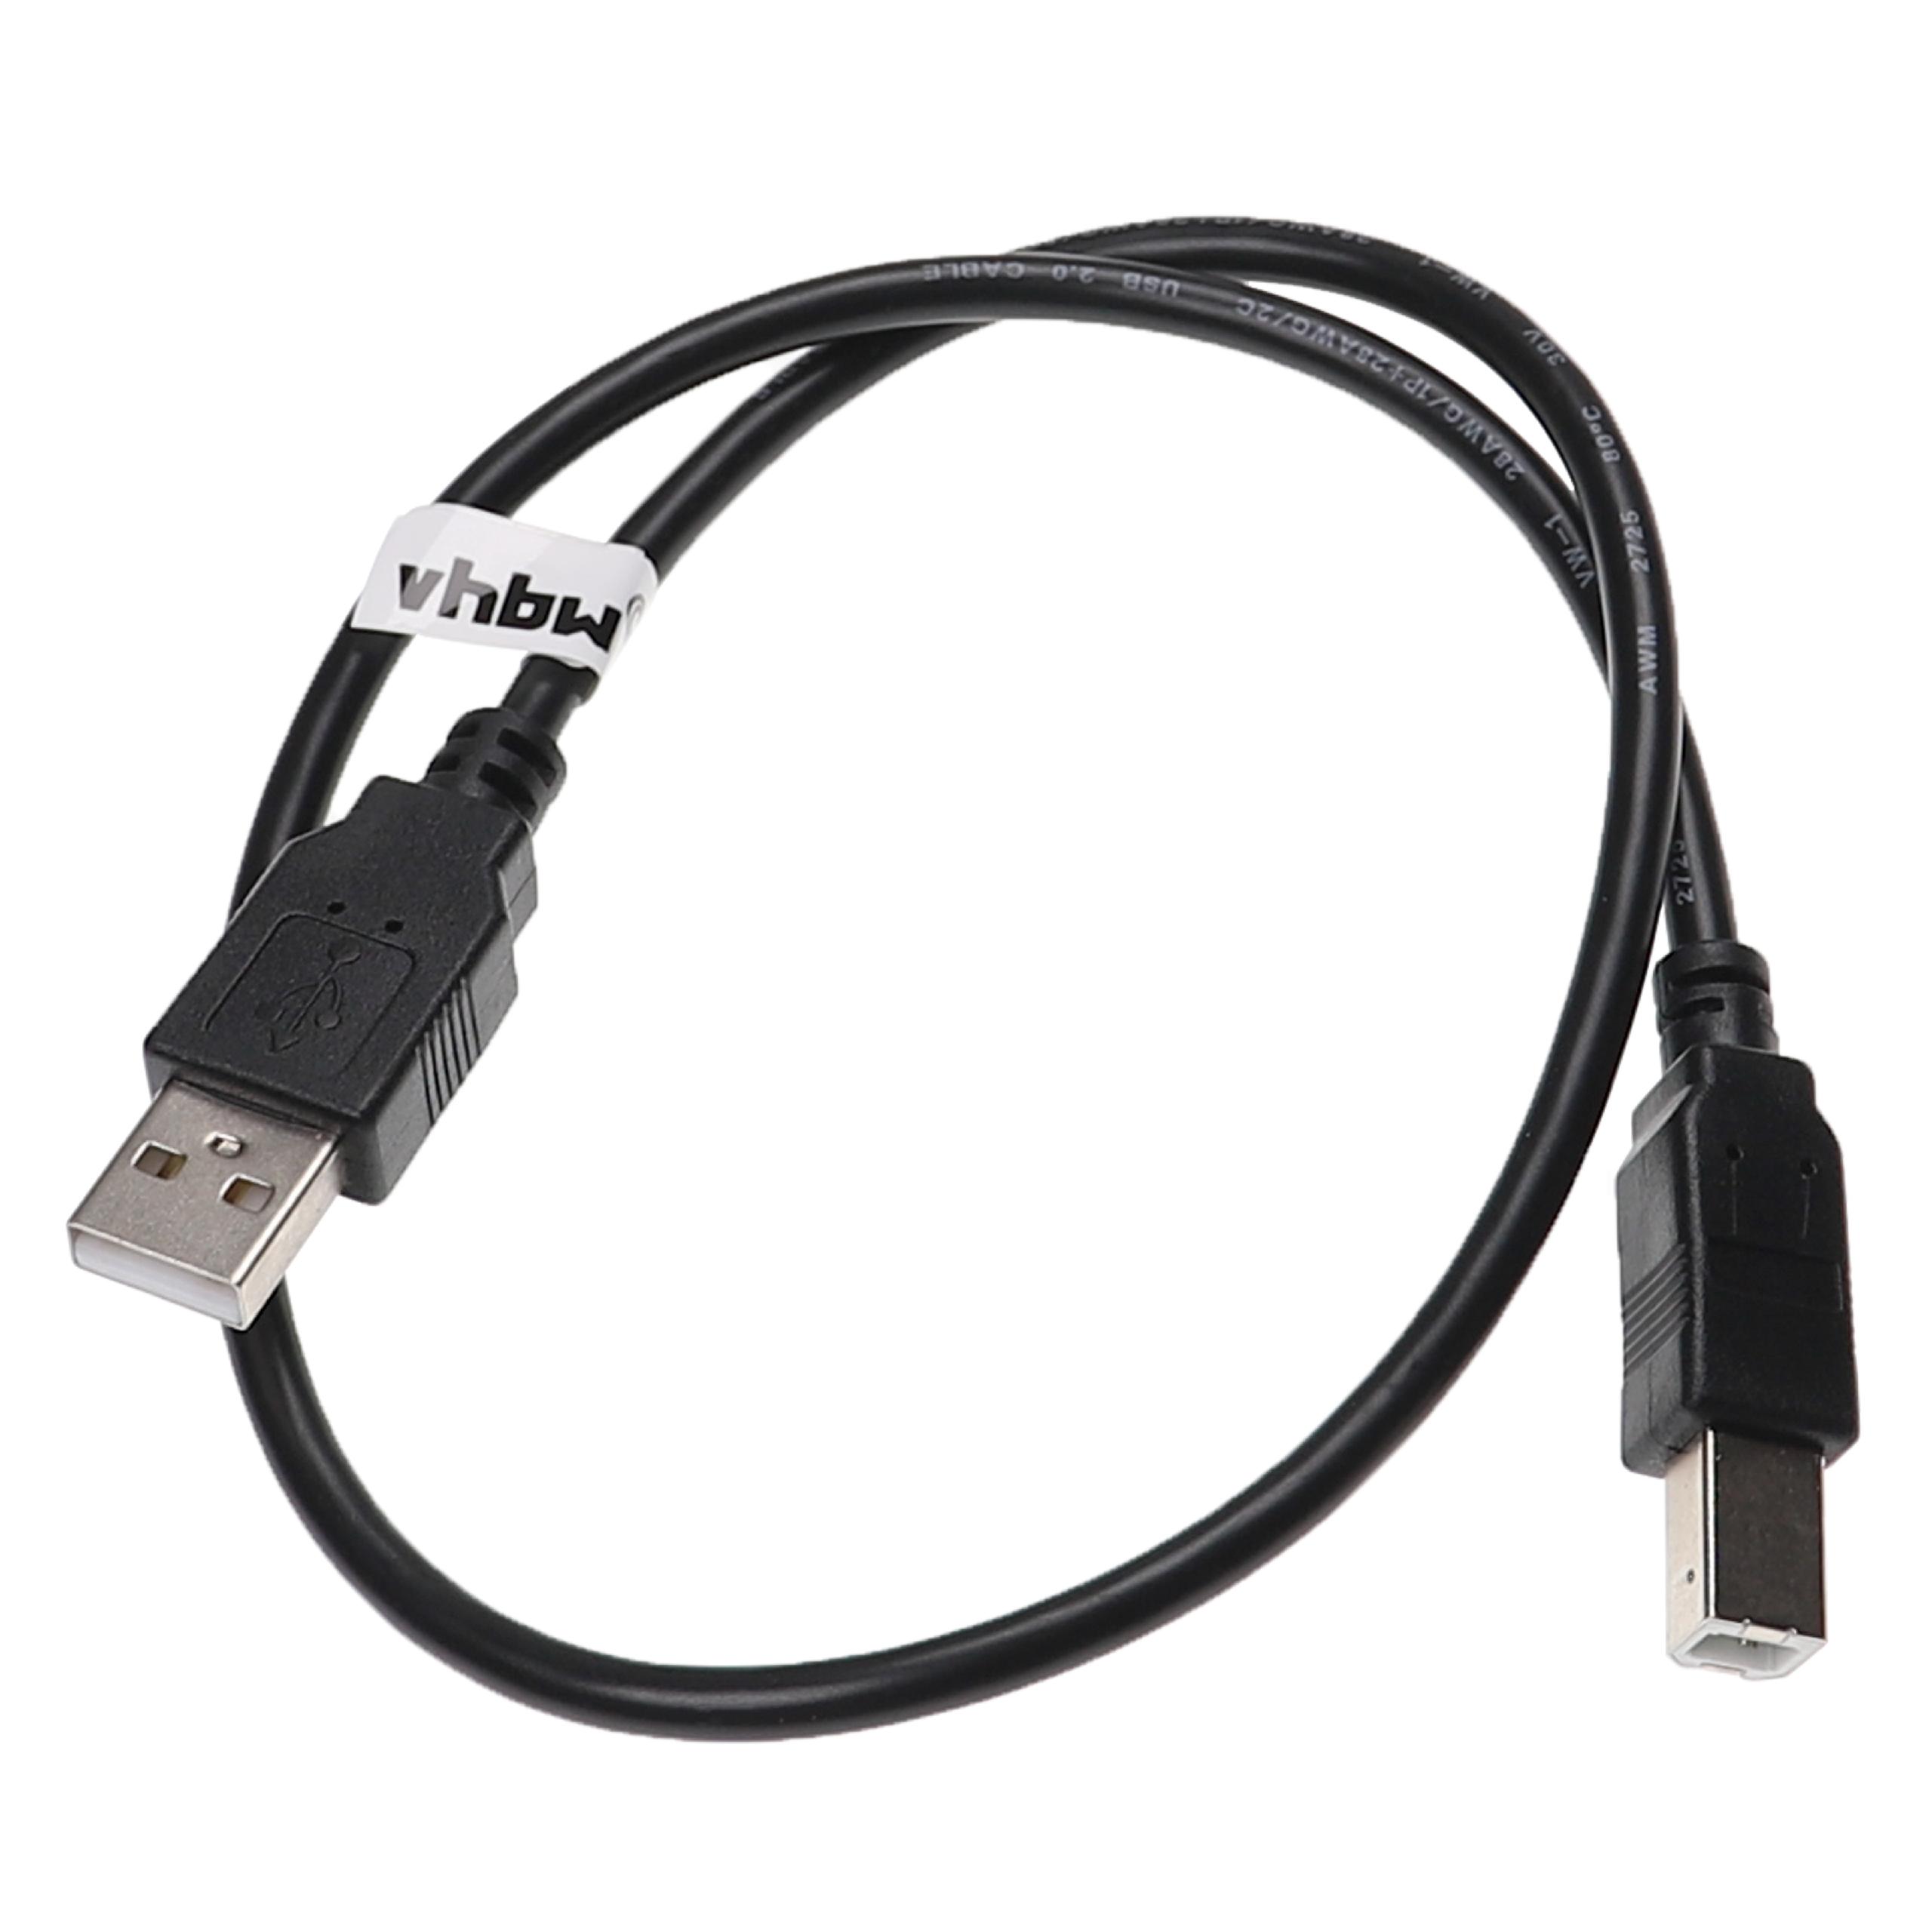 Vhbw cavo della stampante cavo per scanner cavo adattatore da USB A a USB B  - 0,5 m, nero